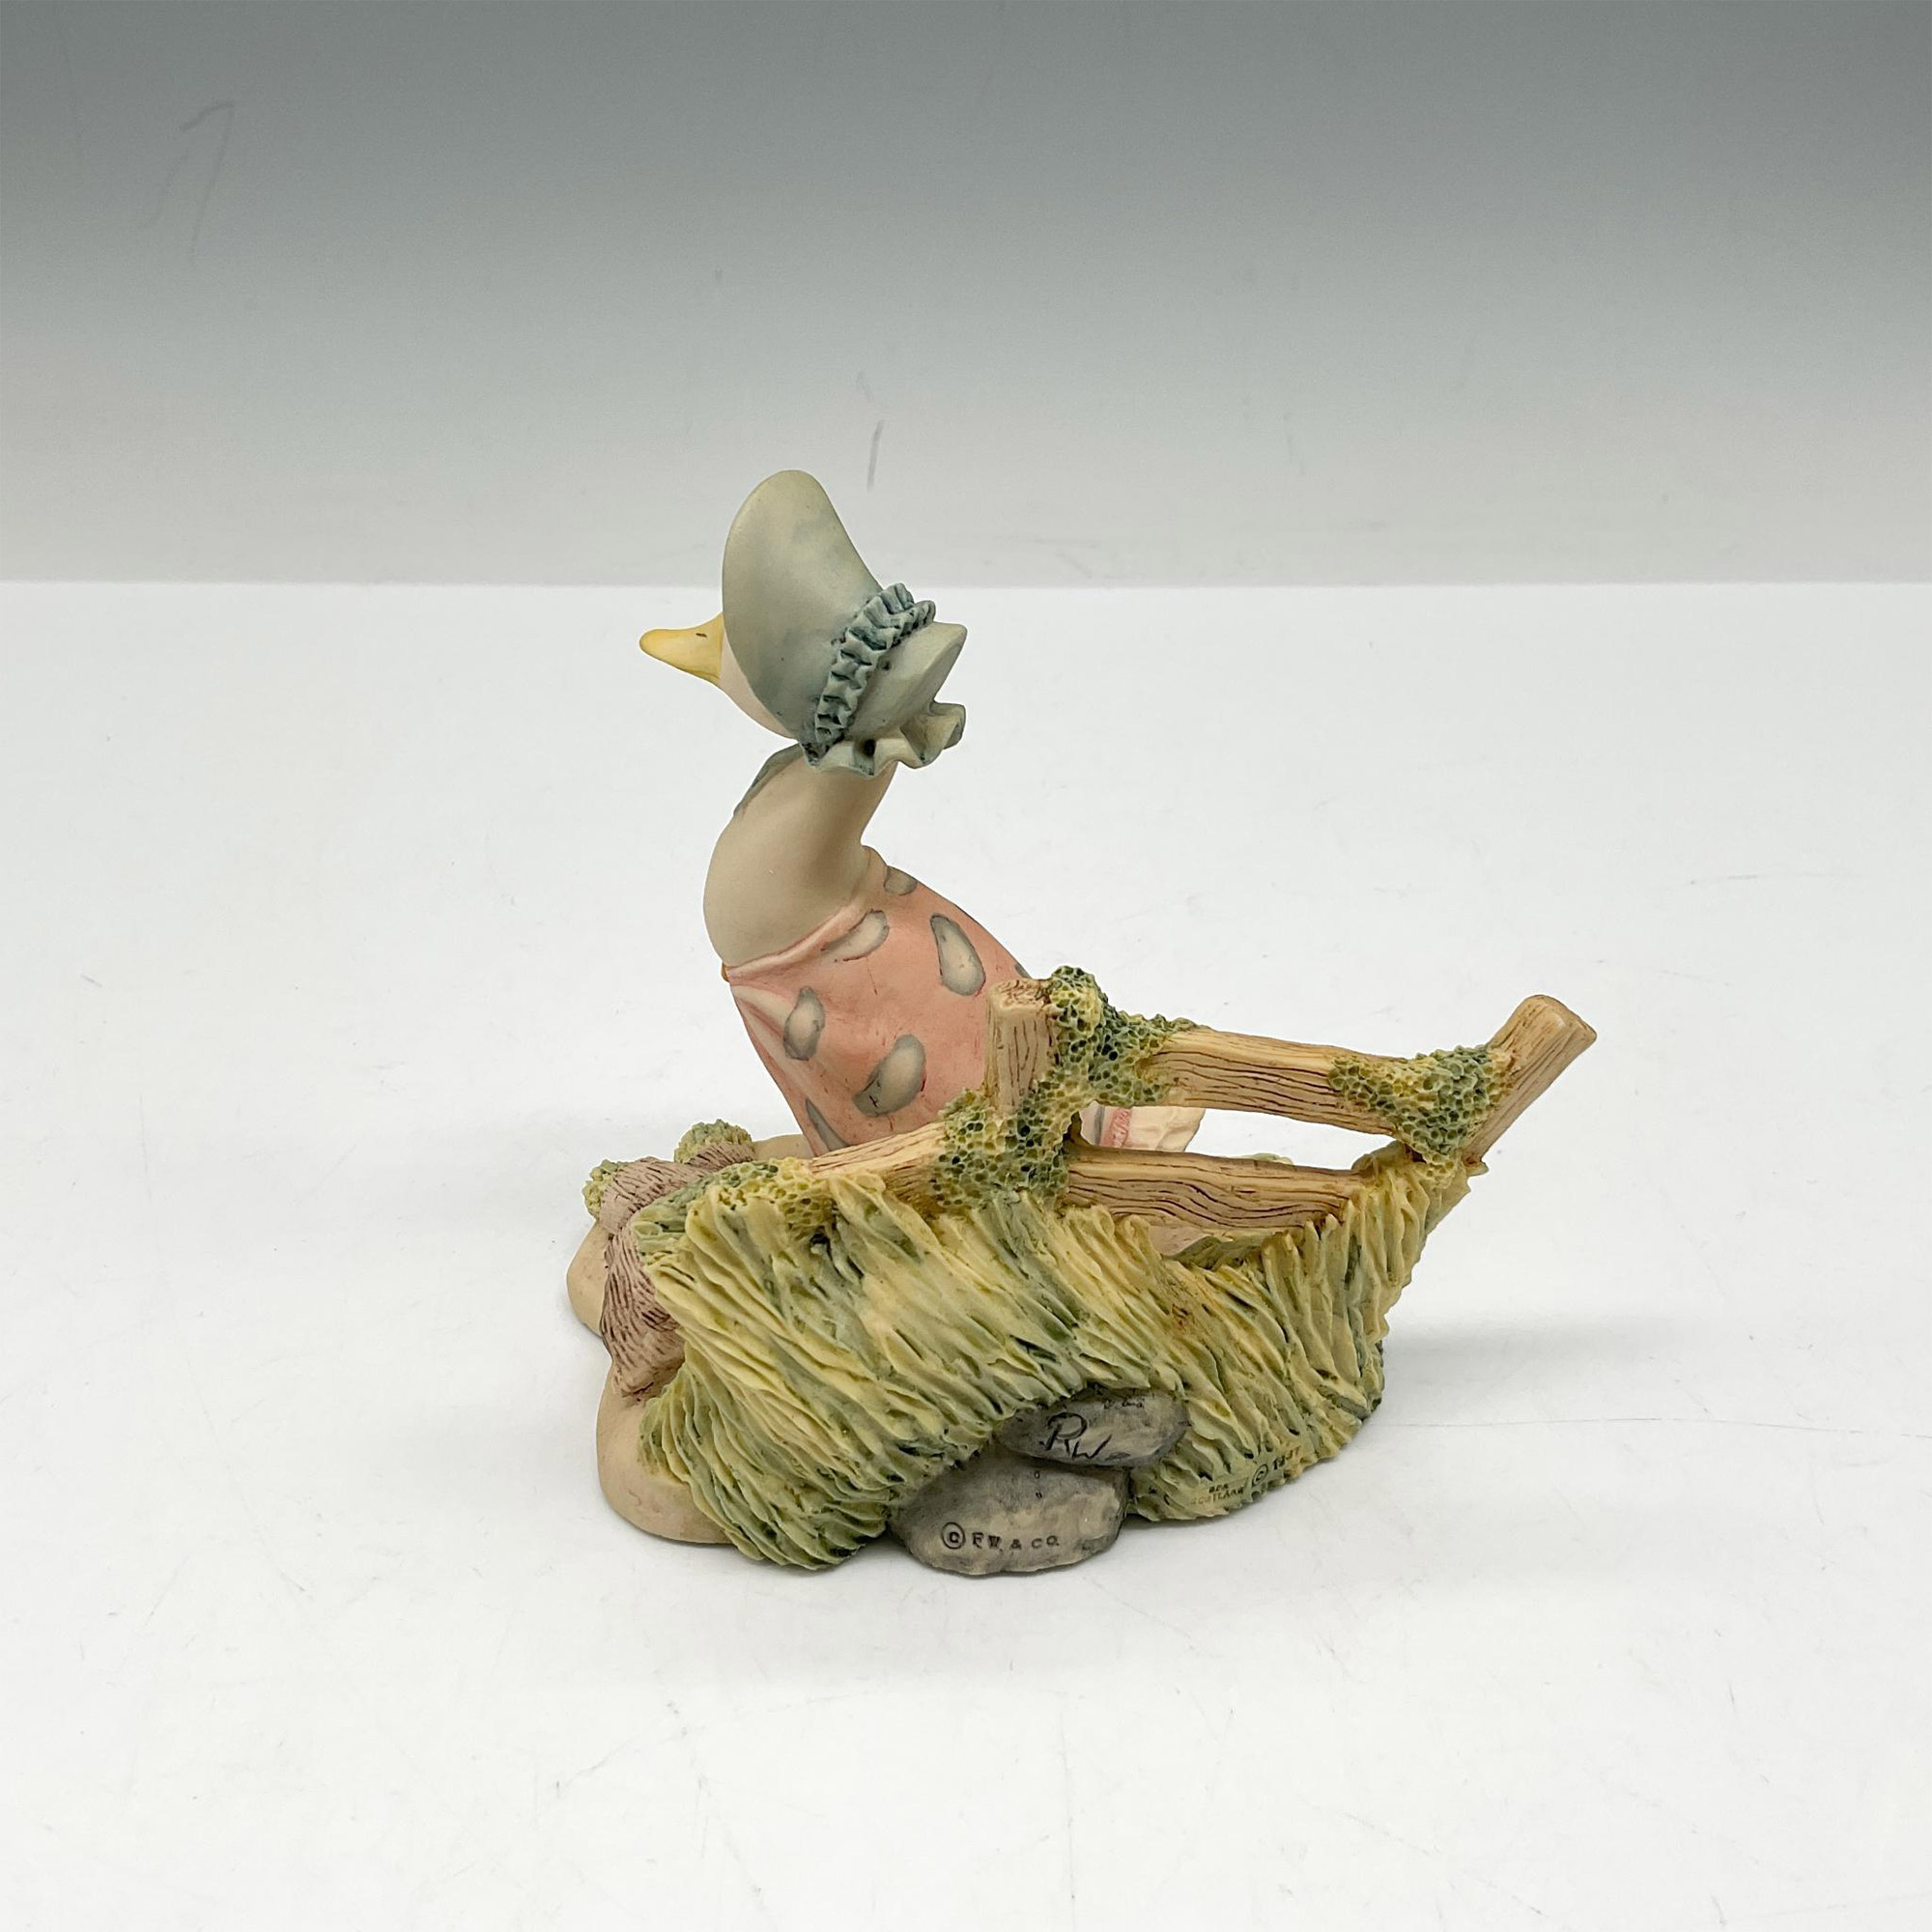 Vintage Beatrix Potter Figurine, Jemima Puddleduck Sets Off - Image 2 of 3